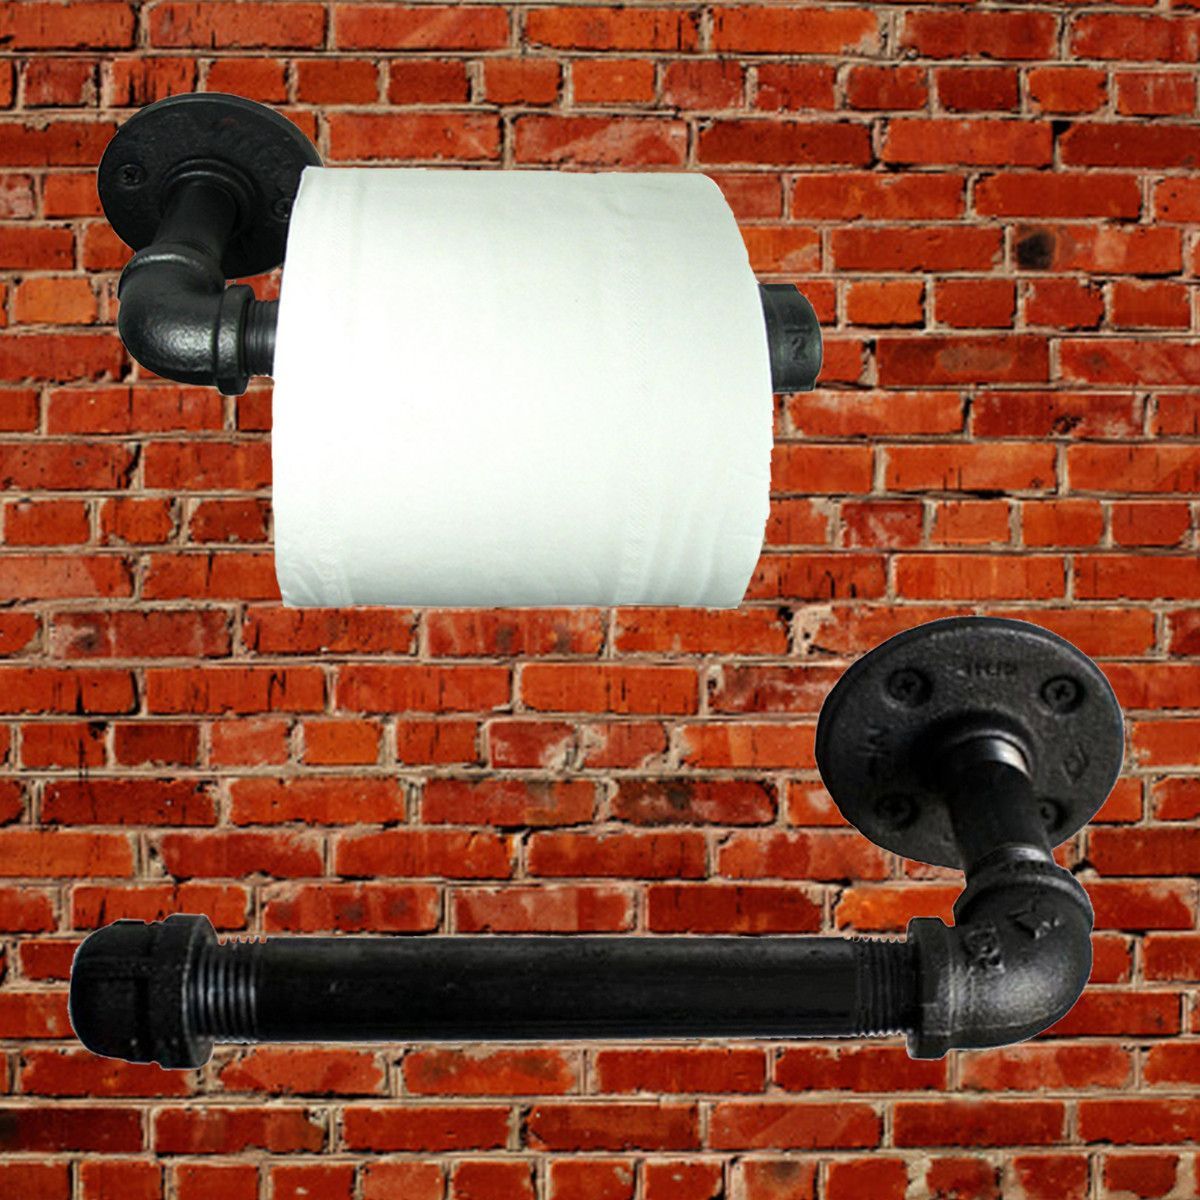 Industrial--Pipeline-Vintage-Paper-Towel-Rack-Bathroom--Wall-Mount-Toilet-Paper-Holder-1051708